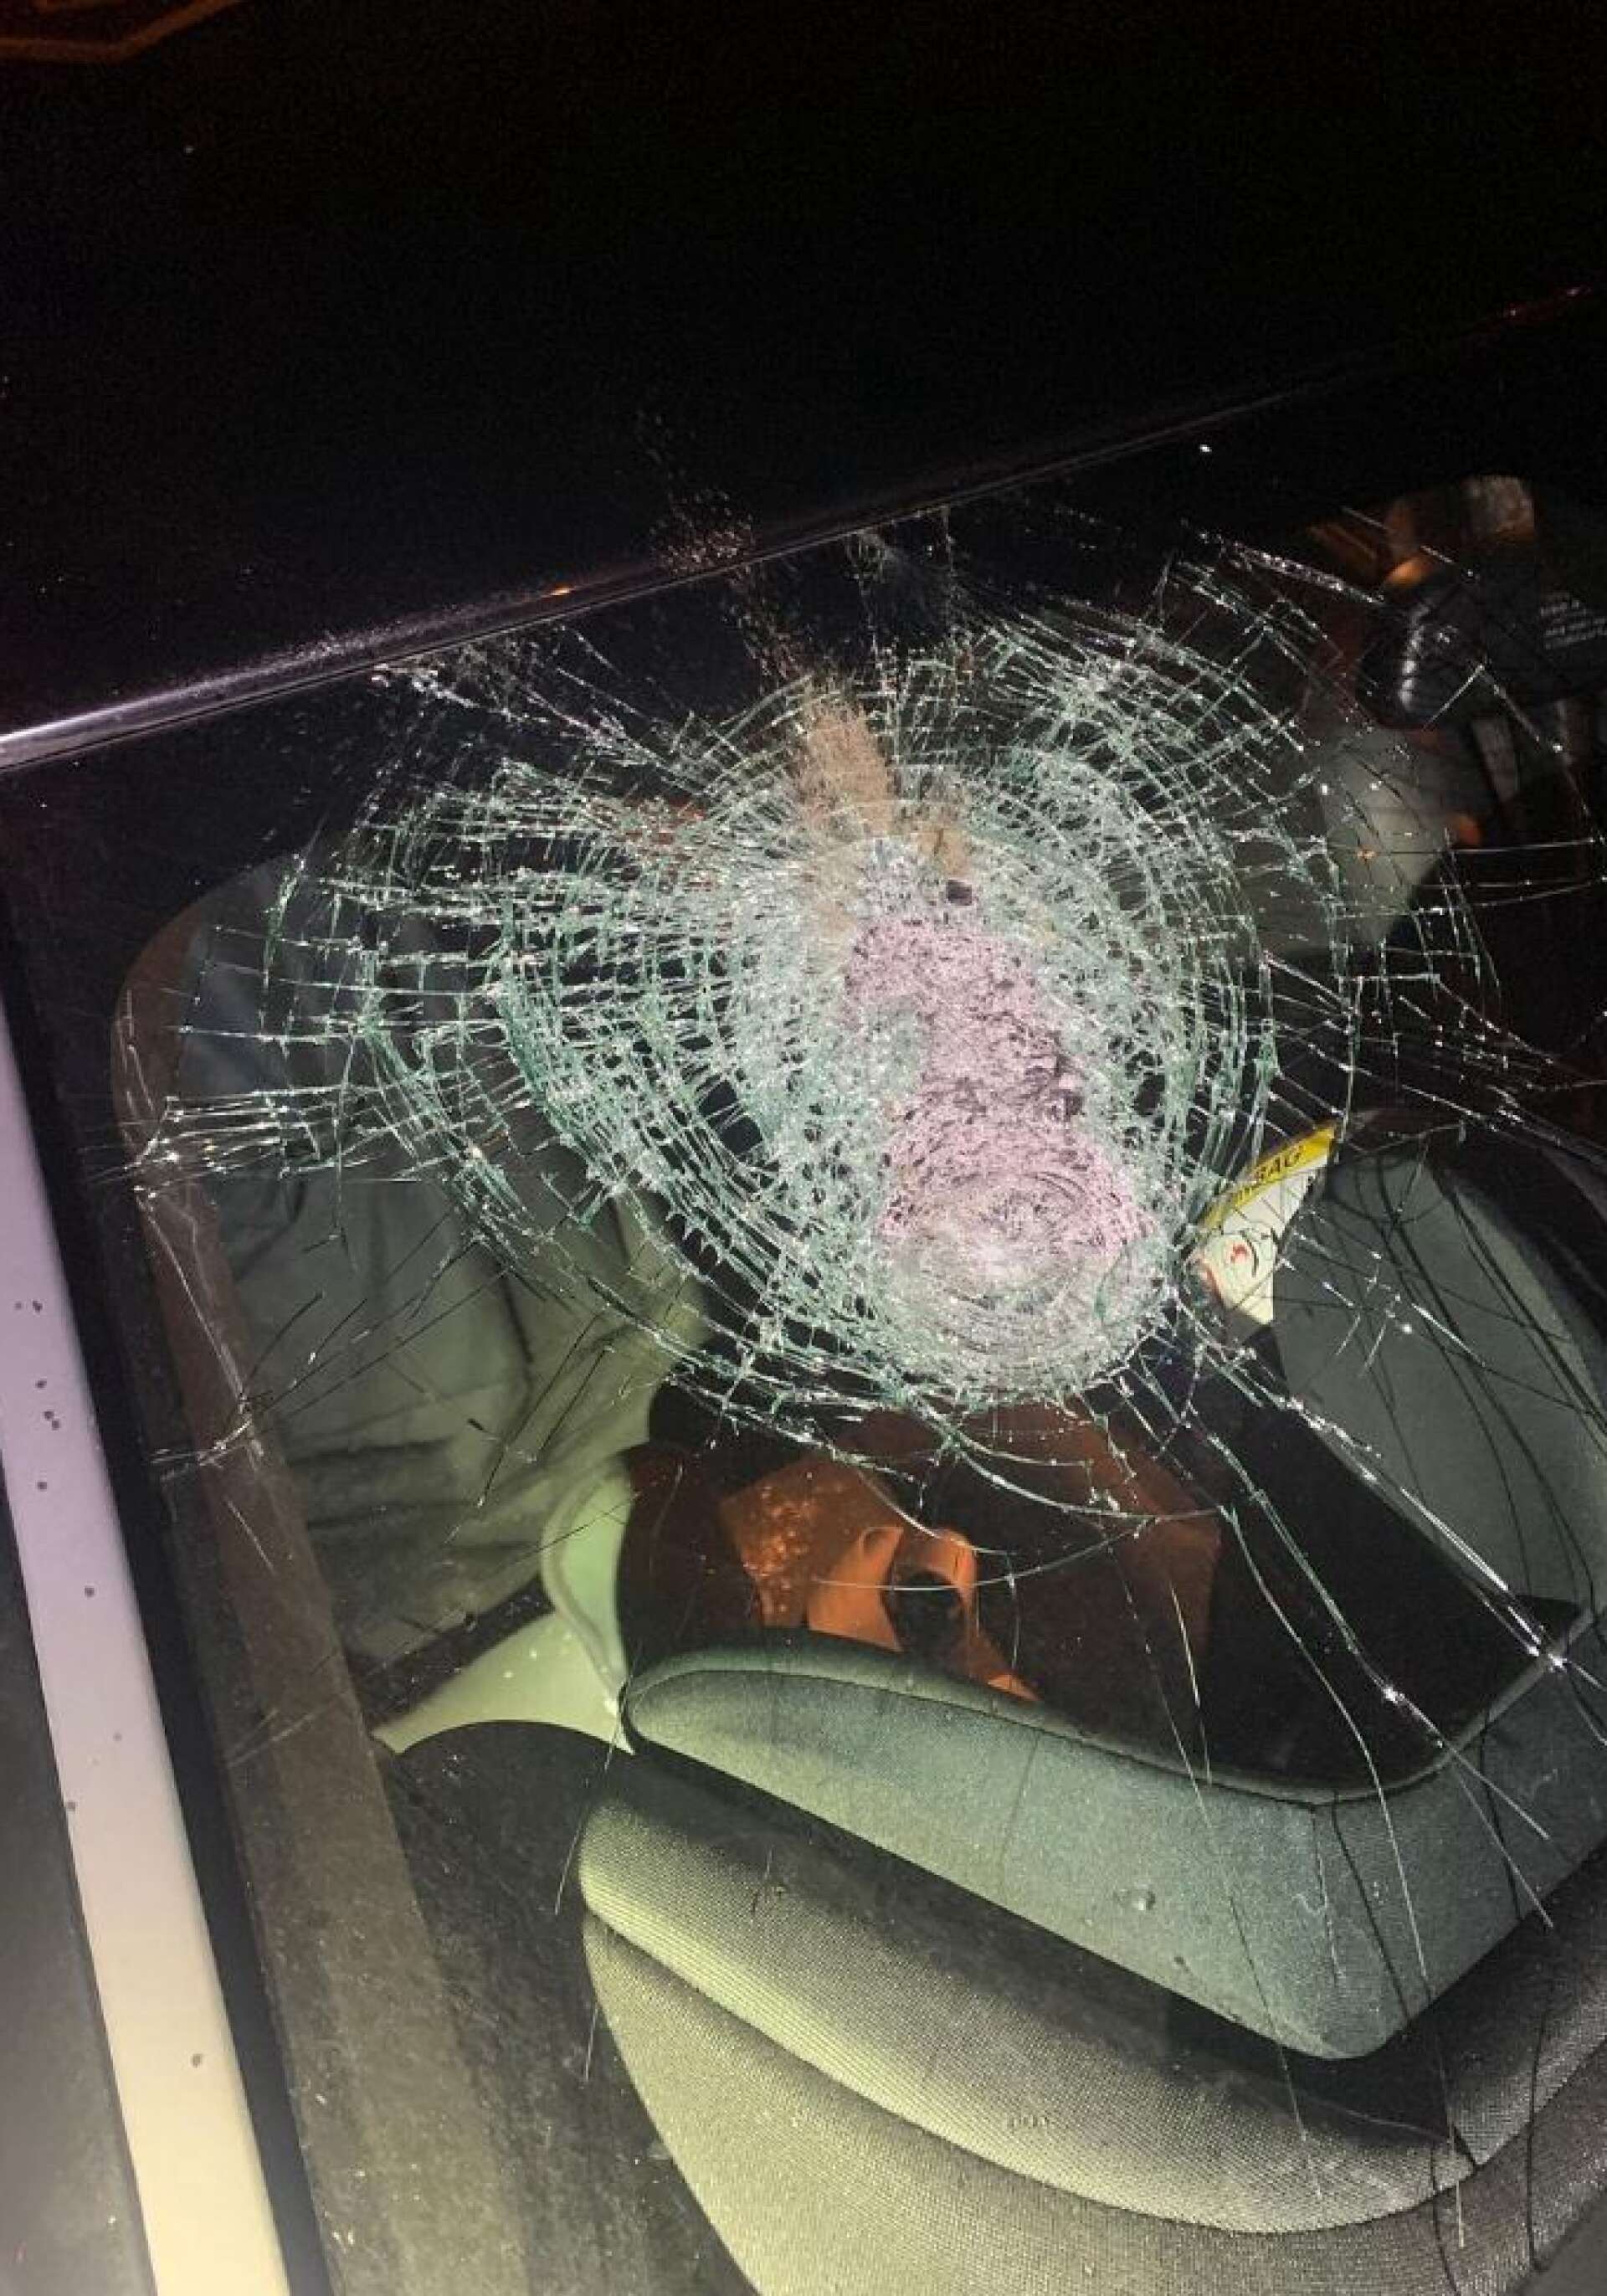 En sten träffade vindrutan – alldeles ovanför där ett barn satt i sin bilbarnsstol. Bild från polisens instagram.